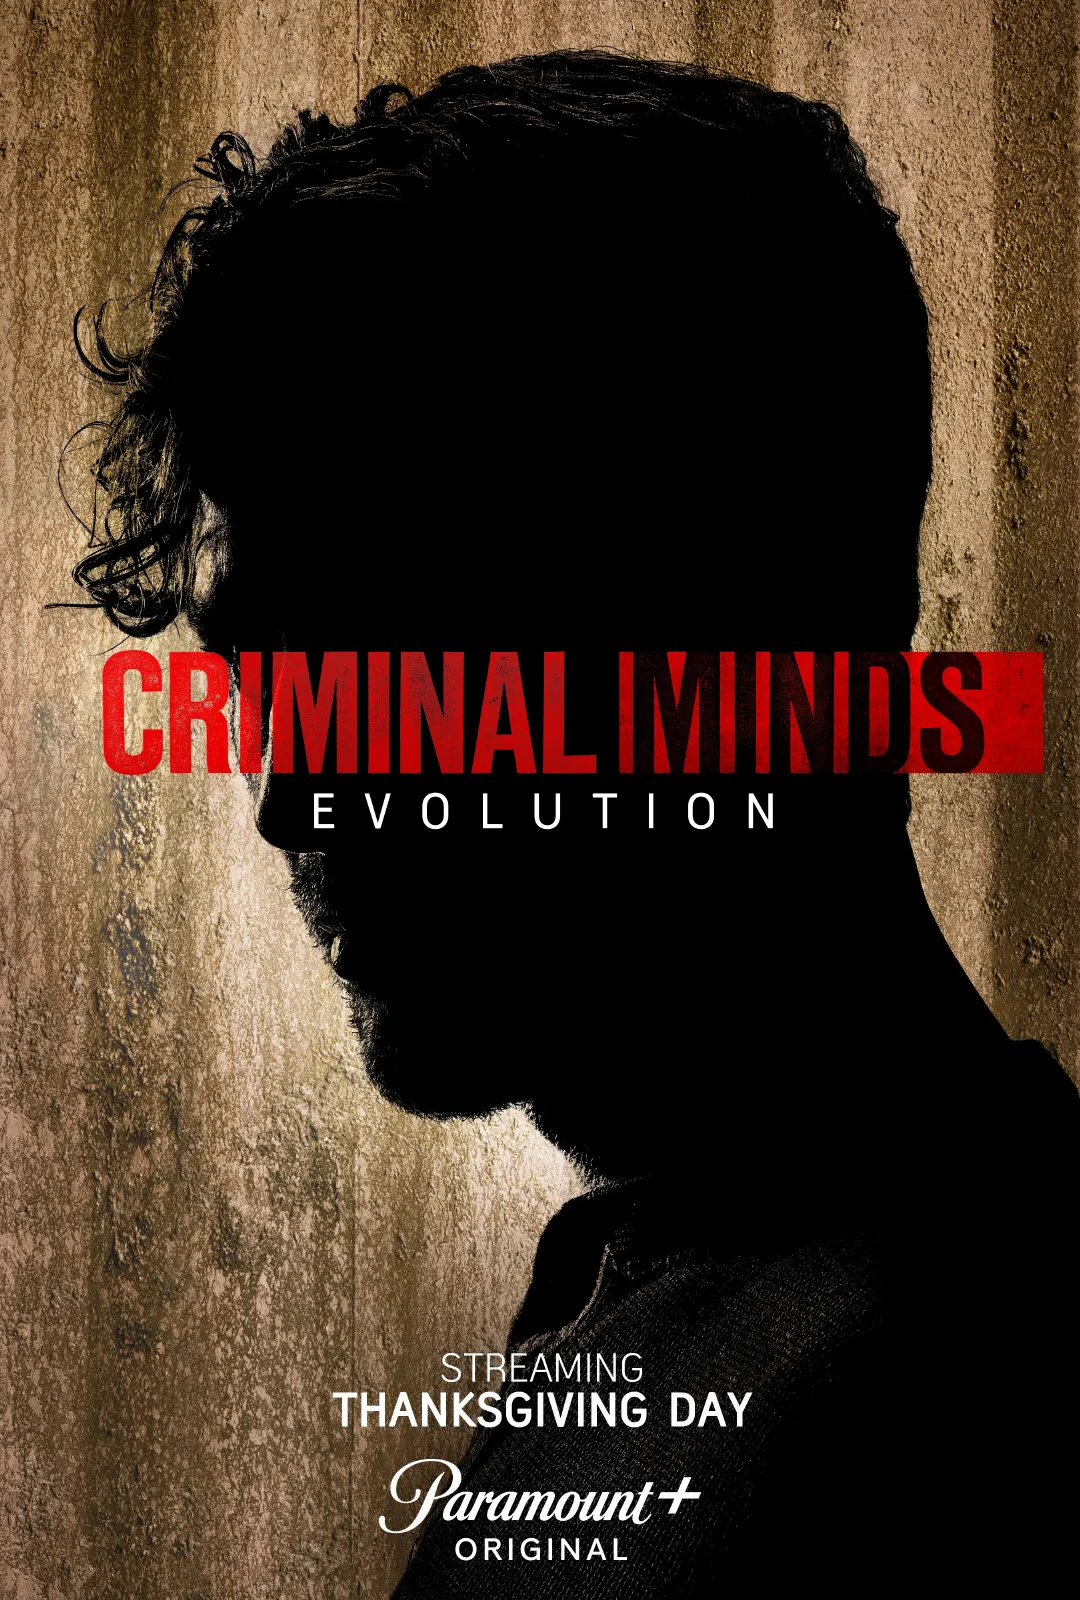 'Criminal Minds: Evolution' Releases Poster and New Stills | FMV6